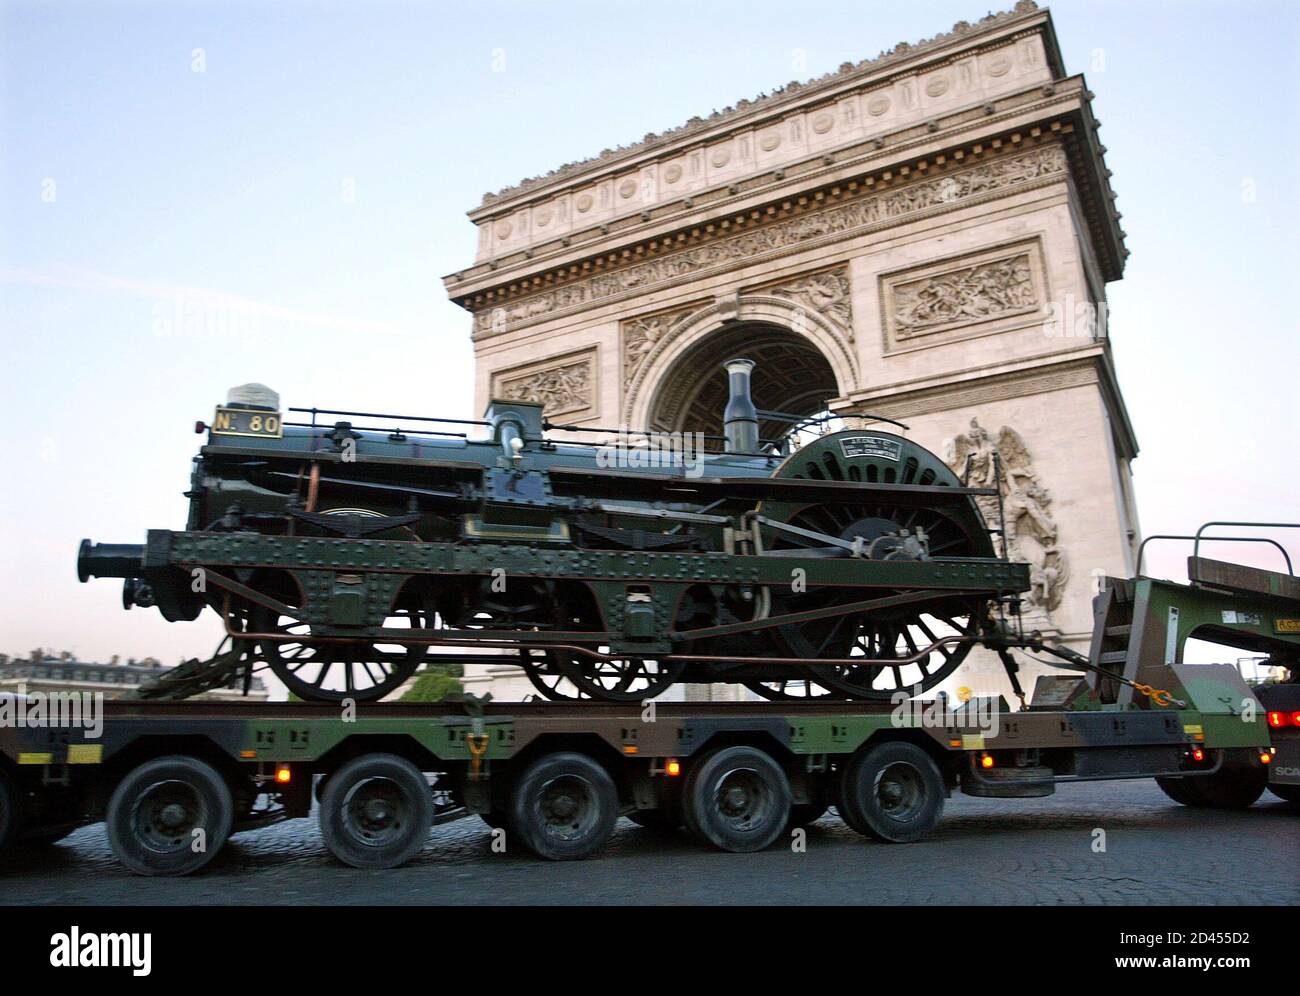 Ein Lastwagen trägt eine alte Lokomotive, während er den Arc de Triomphe von Paris auf seinem Weg passiert, um auf den Champs Elysees, 10. Mai 2003 angezeigt zu werden. Vom 17. Mai bis 15. Juni veranstaltet die französische Eisenbahngesellschaft (SNCF) die Ausstellung "Train Capitale" über den französischen Eisenbahnverkehr. 150 Jahre Bahngeschichte werden von den Lokomotiven der Crampton und Marc Seguin auf den künftigen Triebwagen AGC (AutoRail Grande Capacite) zurückgeführt. REUTERS/Charles Platiau CP/ Stockfoto